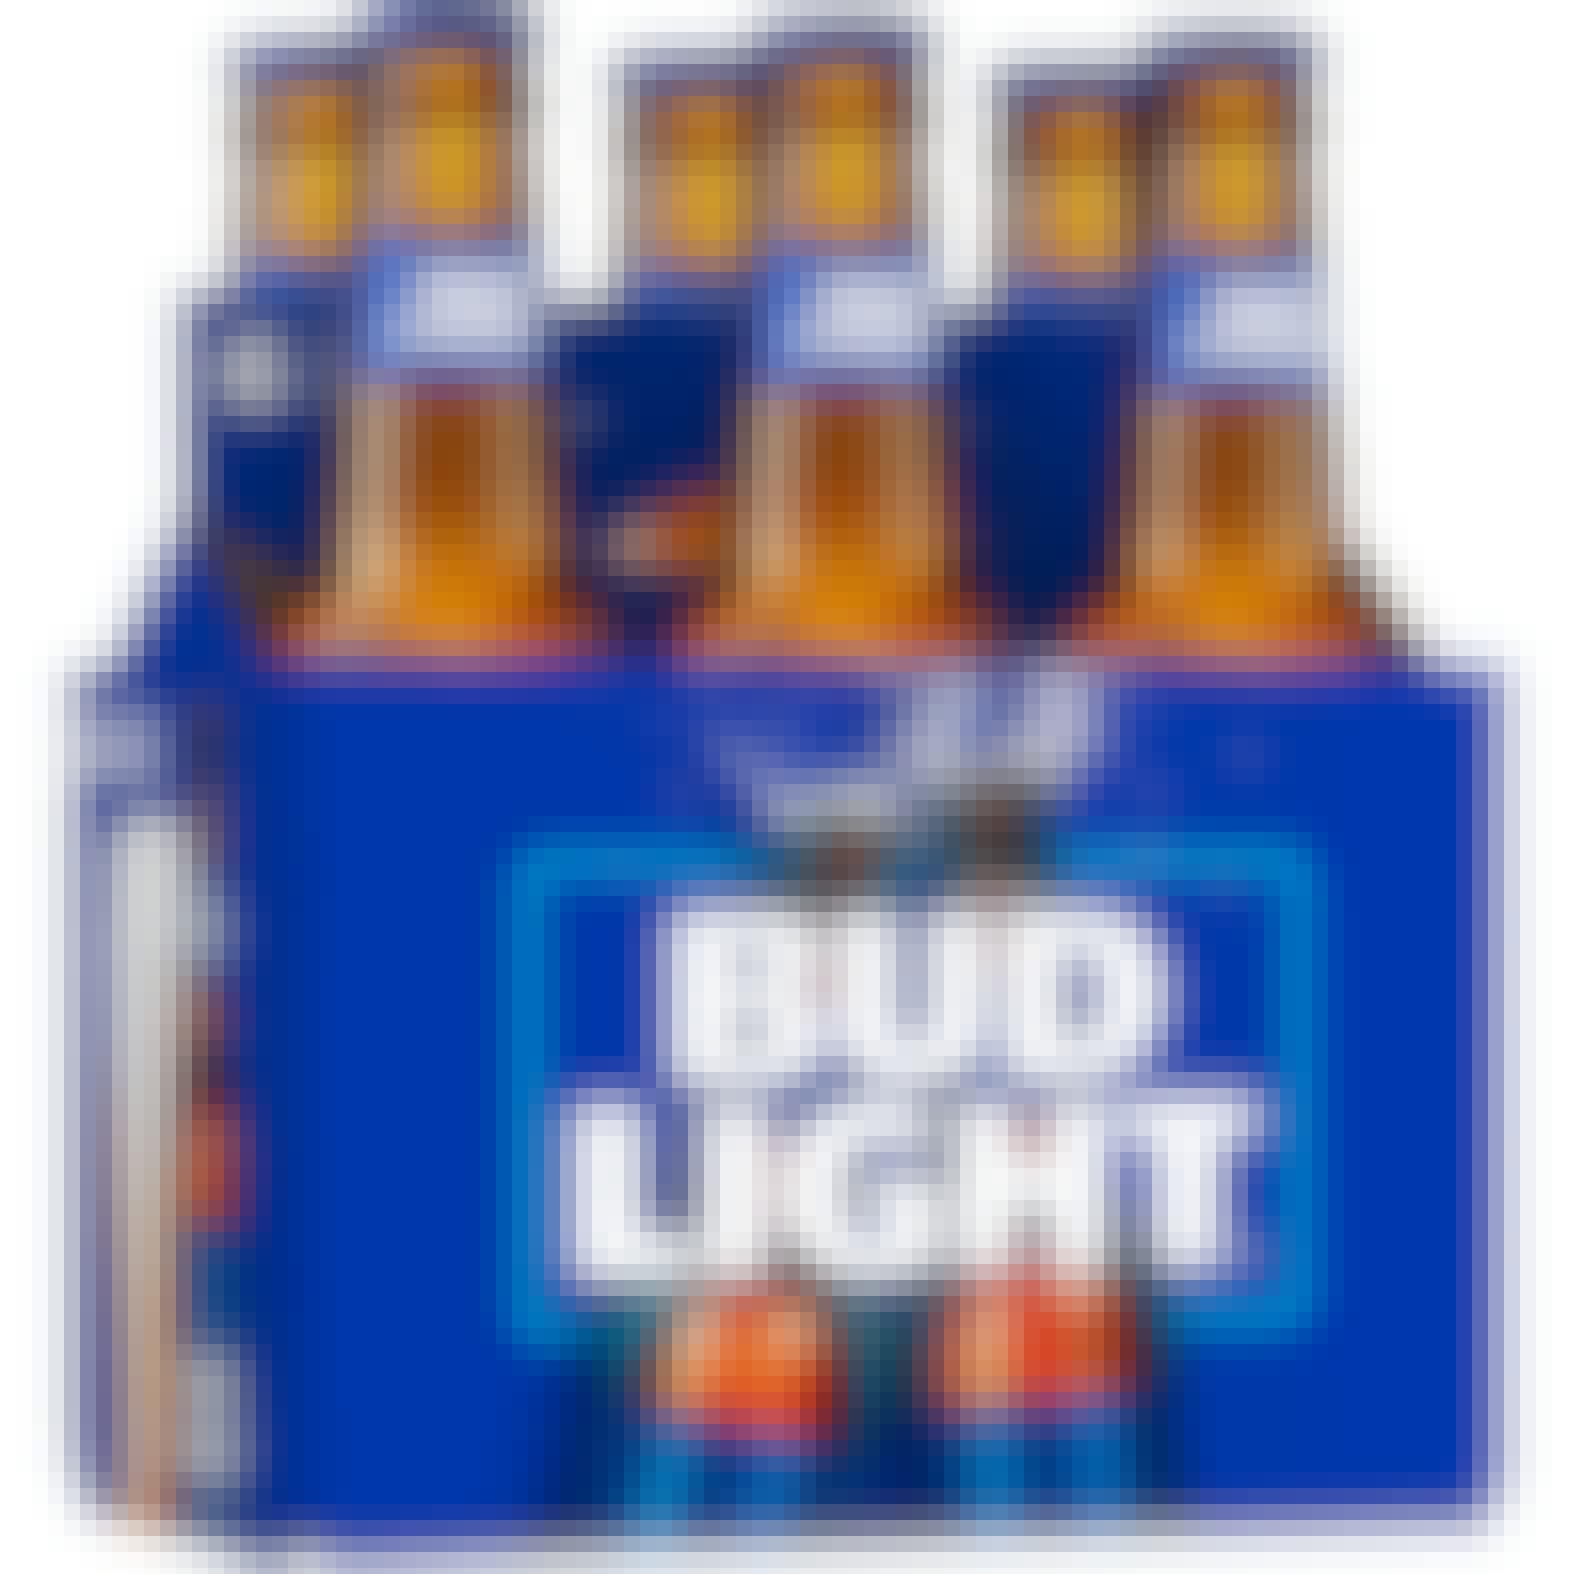 Bud Light Lager Beer 6 pack 12 oz. Bottle